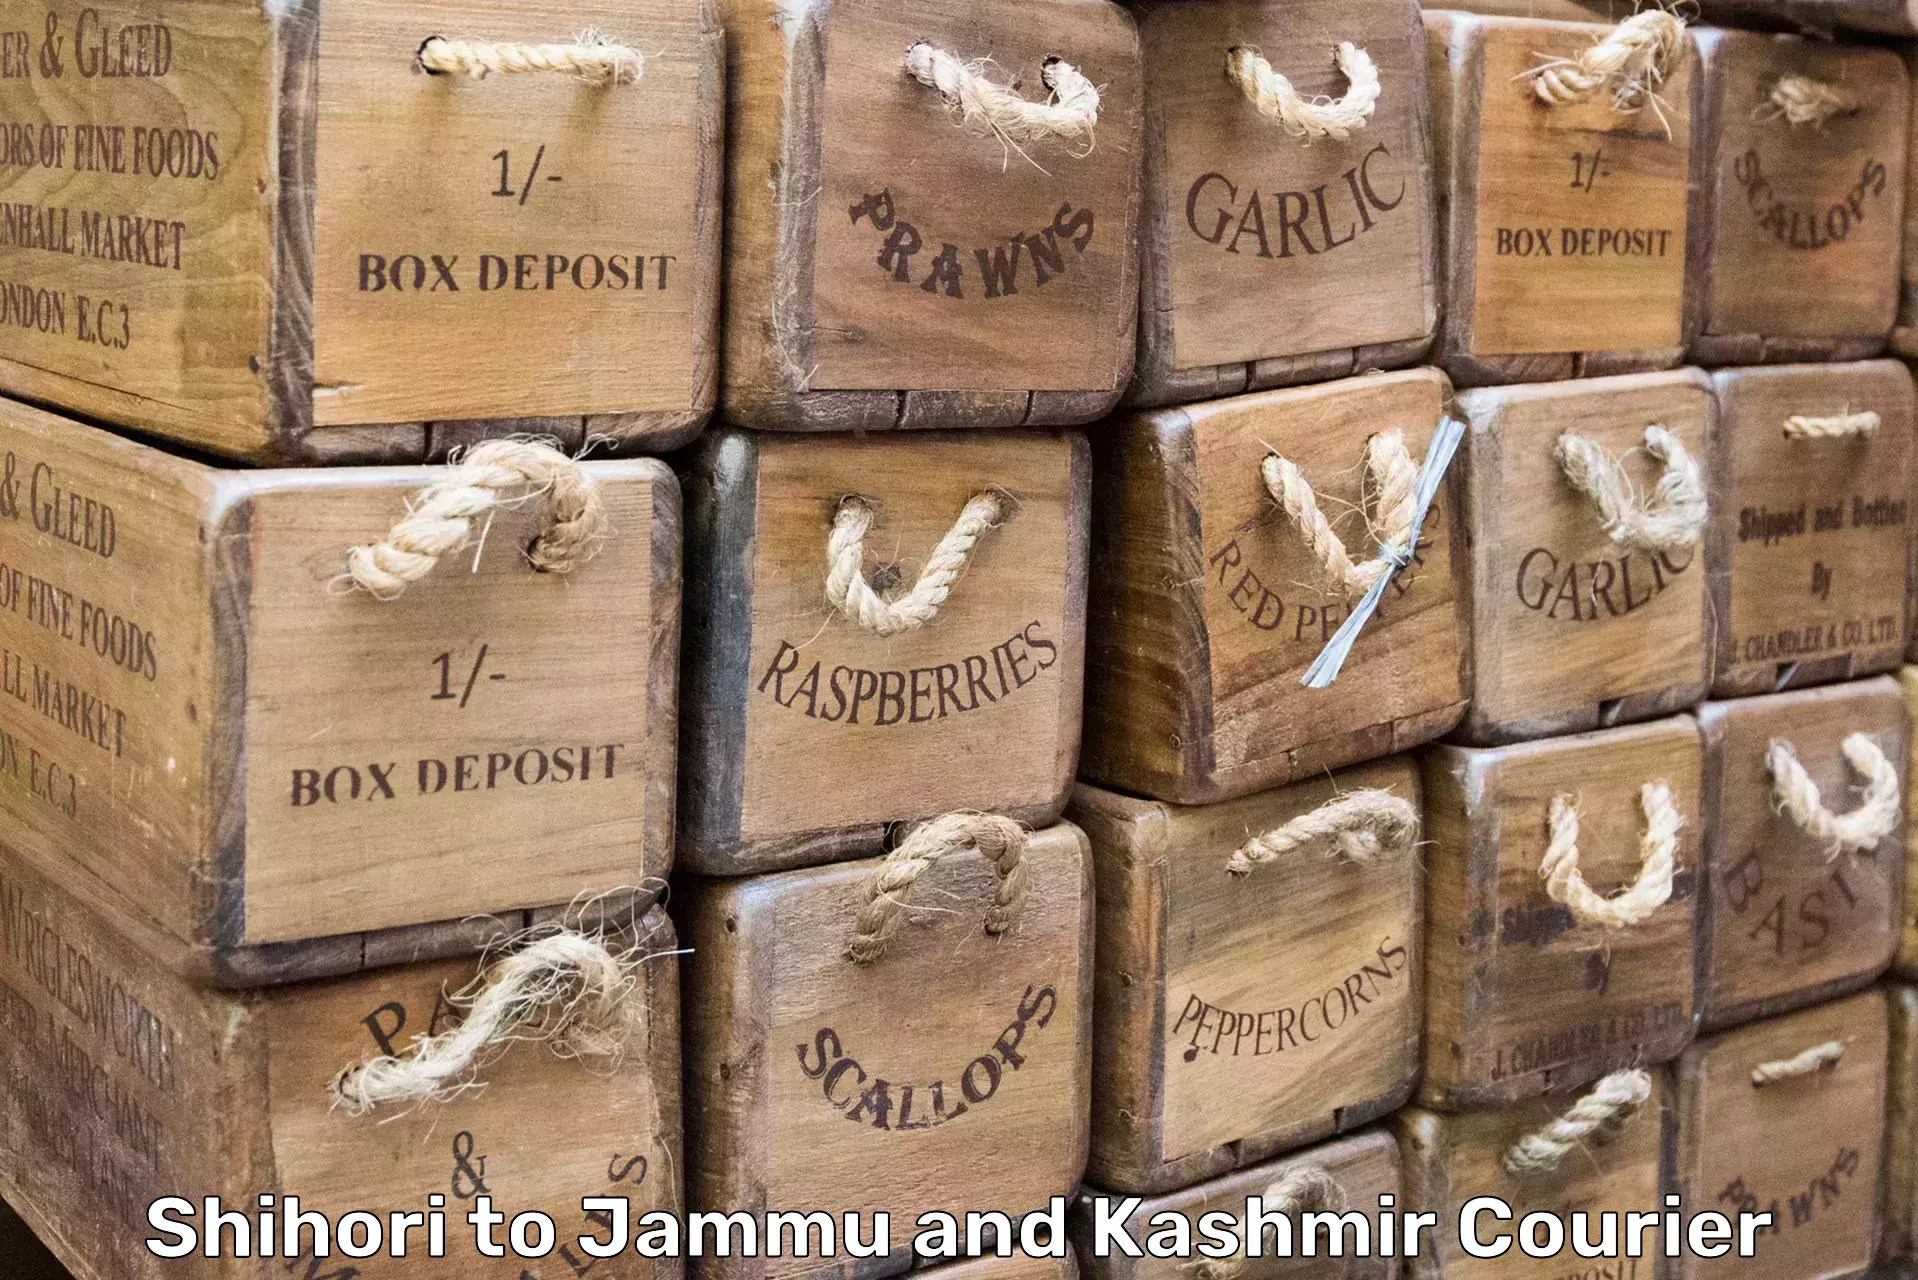 Safe household movers Shihori to Jammu and Kashmir